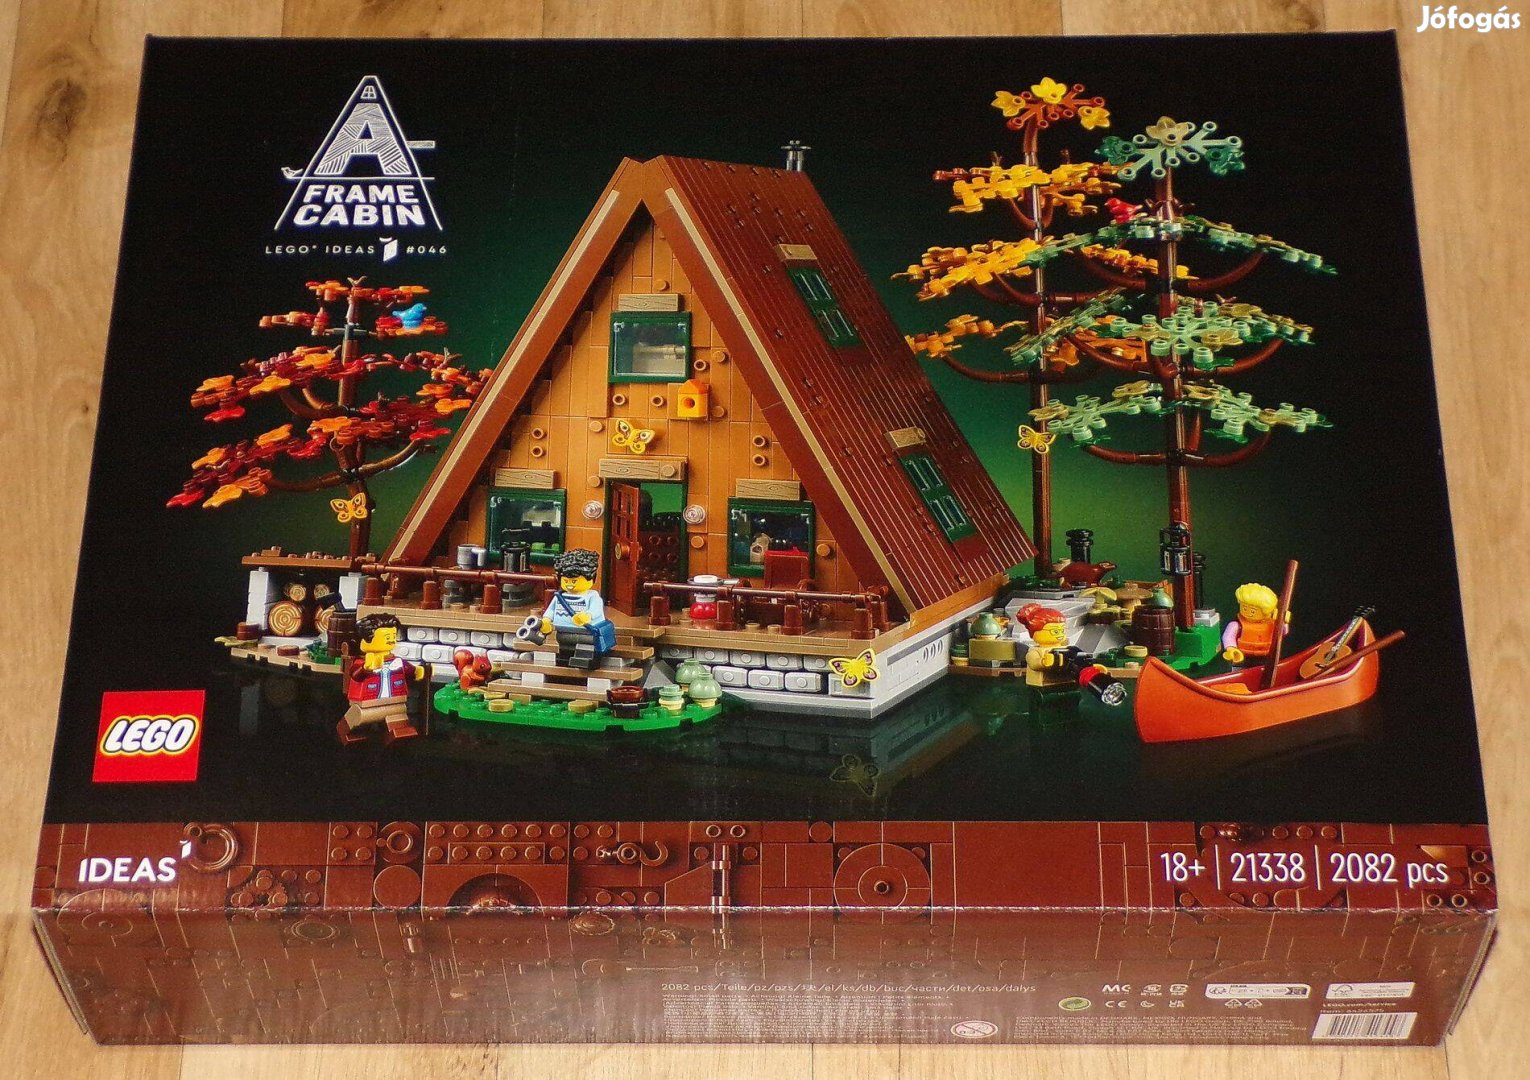 Bontatlan Lego Ideas 21338 A-Frame Cabin készlet